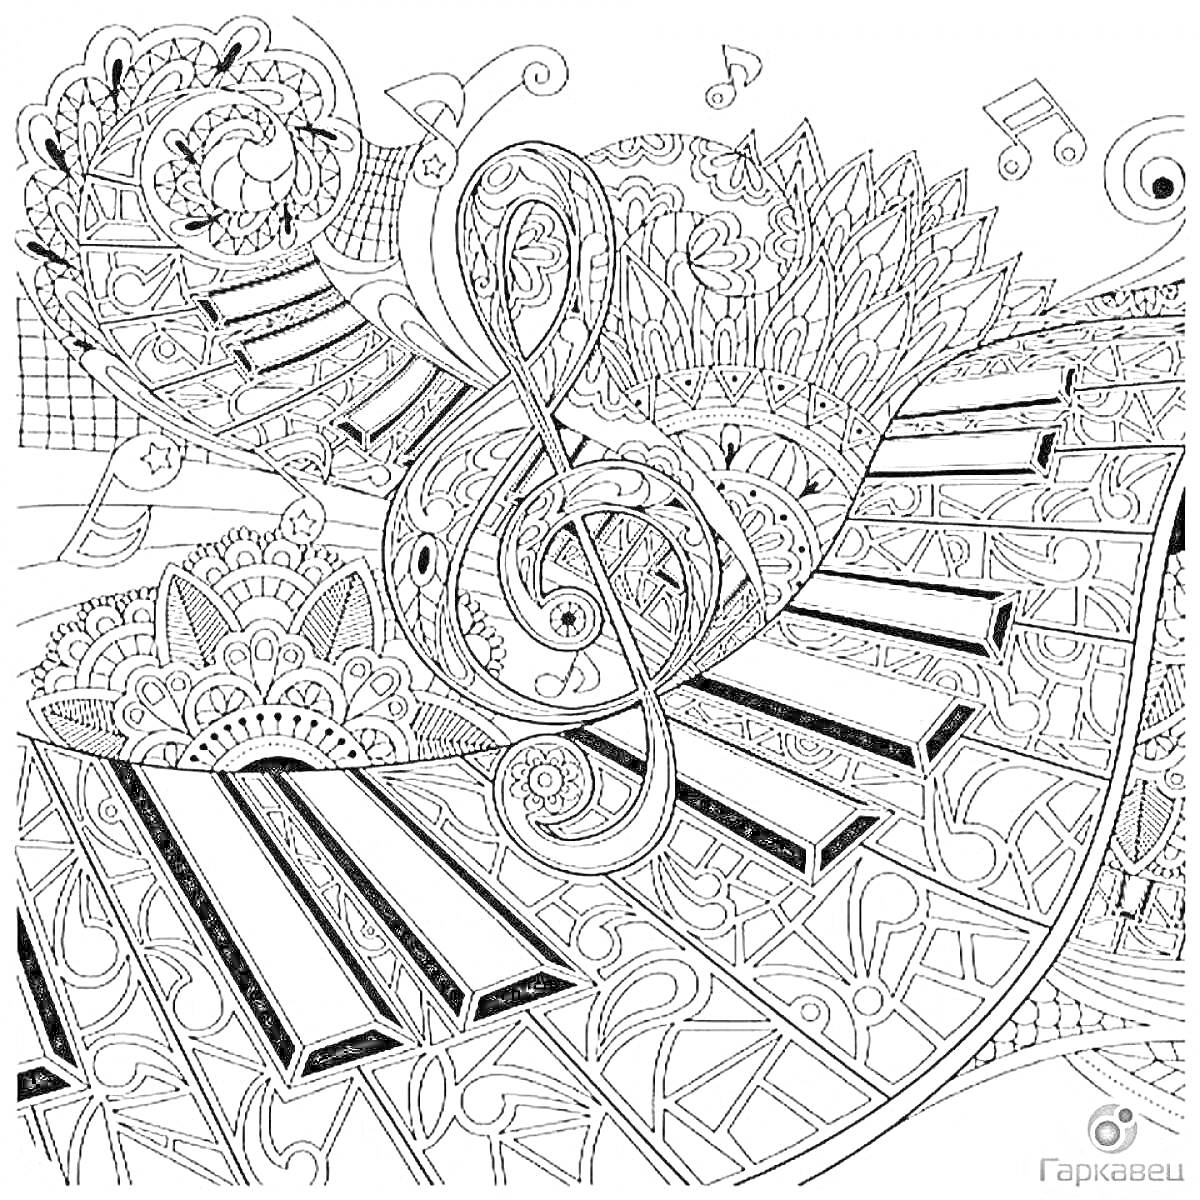 Раскраска Музыкальная антистресс раскраска с клавишами пианино, скрипичным ключом и нотами среди узорчатых элементов